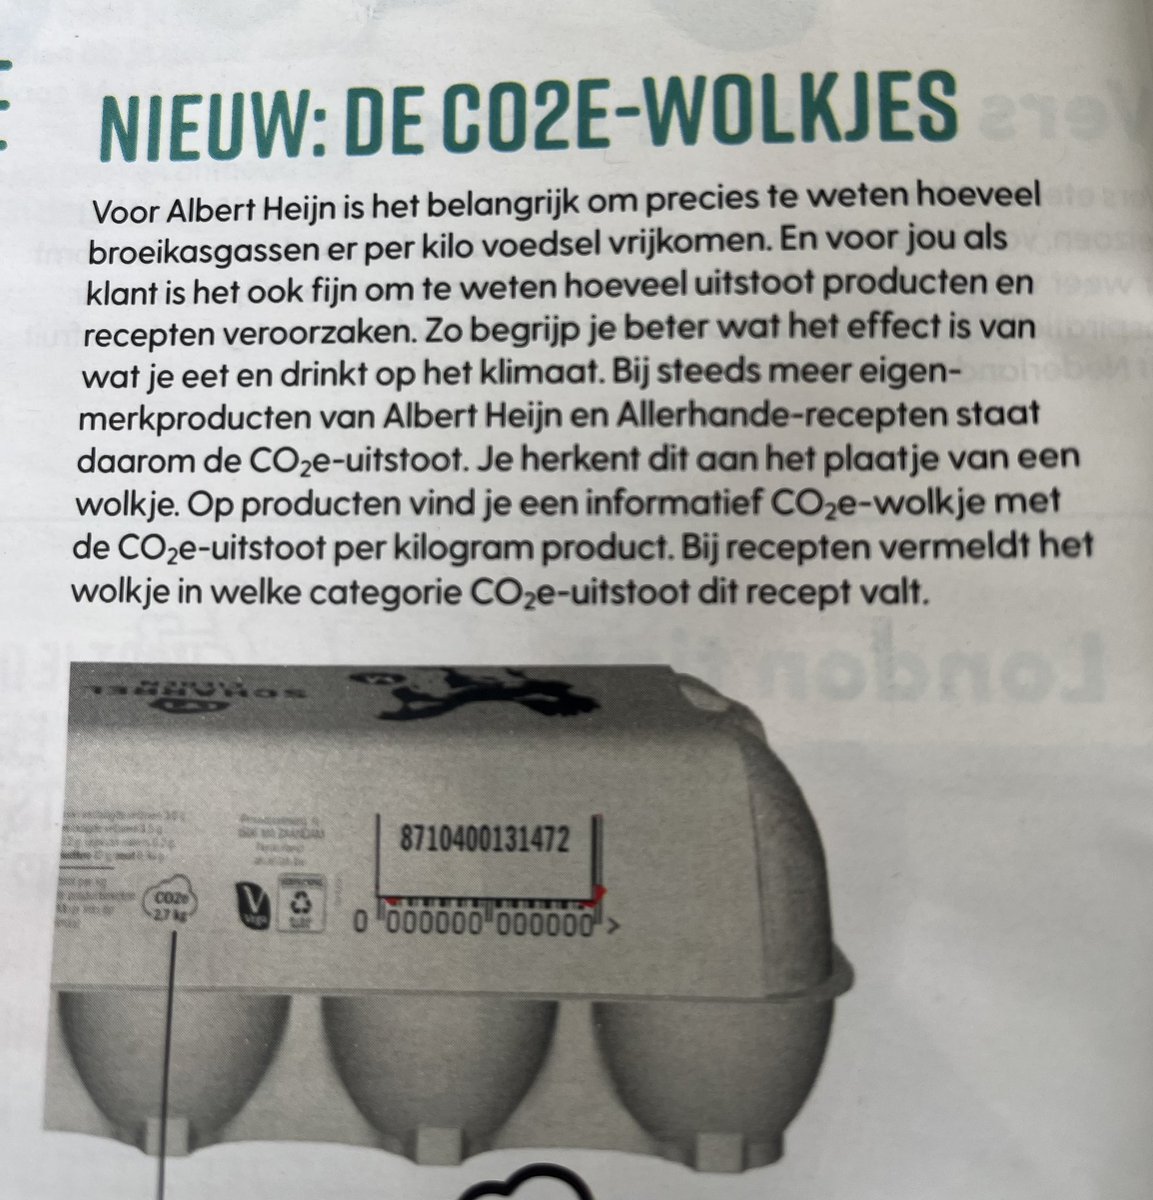 Albert Heijn komt met nieuwe CO2-wolkjes bij producten en recepten want zo “begrijp je beter wat het effect is van wat je eet en drinkt op het klimaat”. Zo komen we steeds dichterbij absoluut klimaat-totalitarisme. Walgelijk.